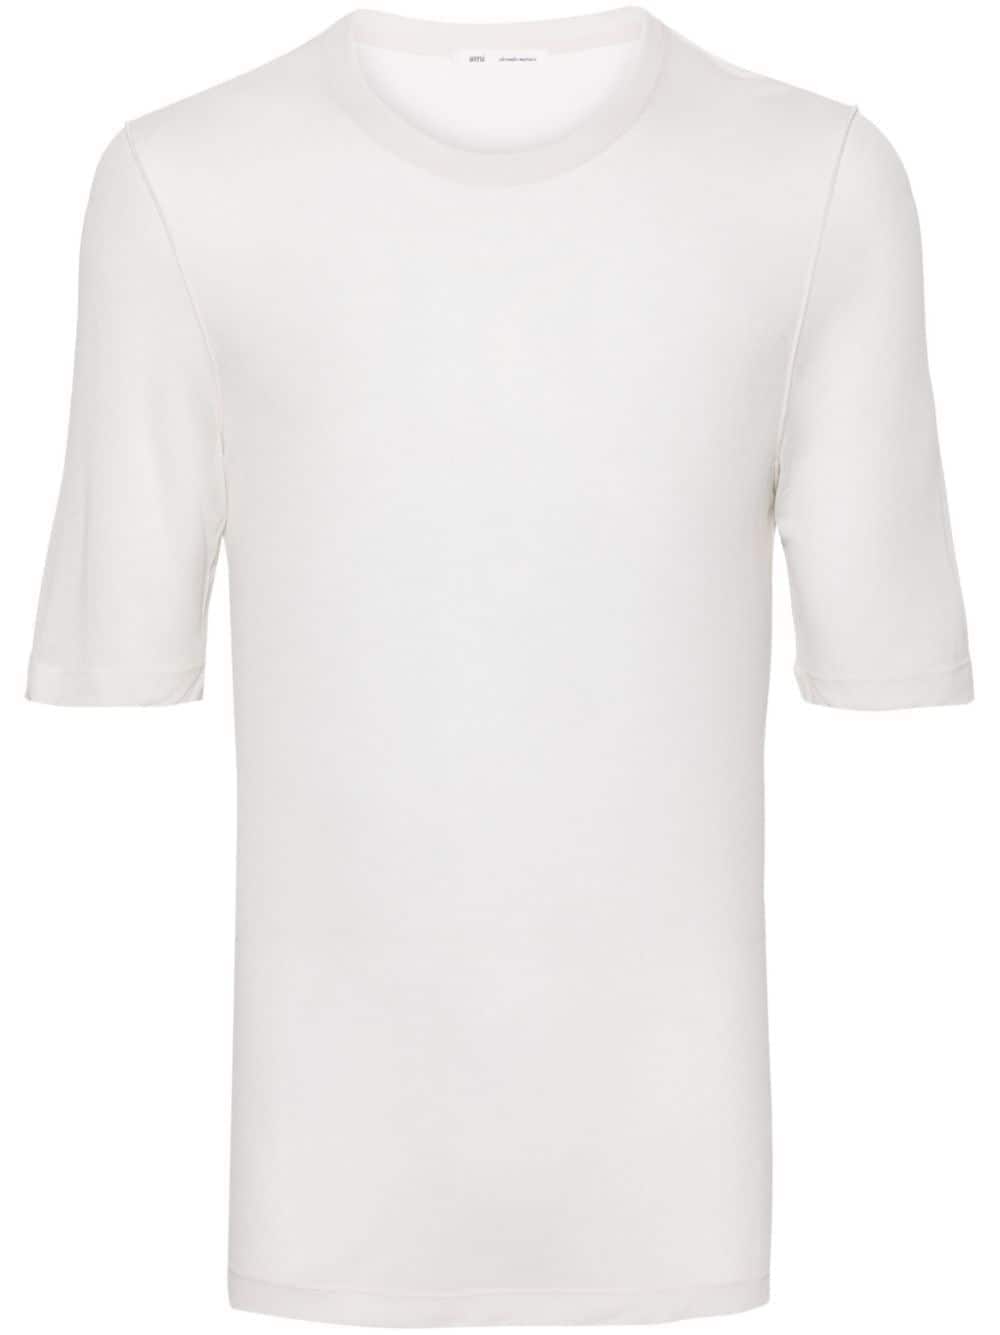 AMI Paris semi-sheer lyocell T-shirt - White von AMI Paris